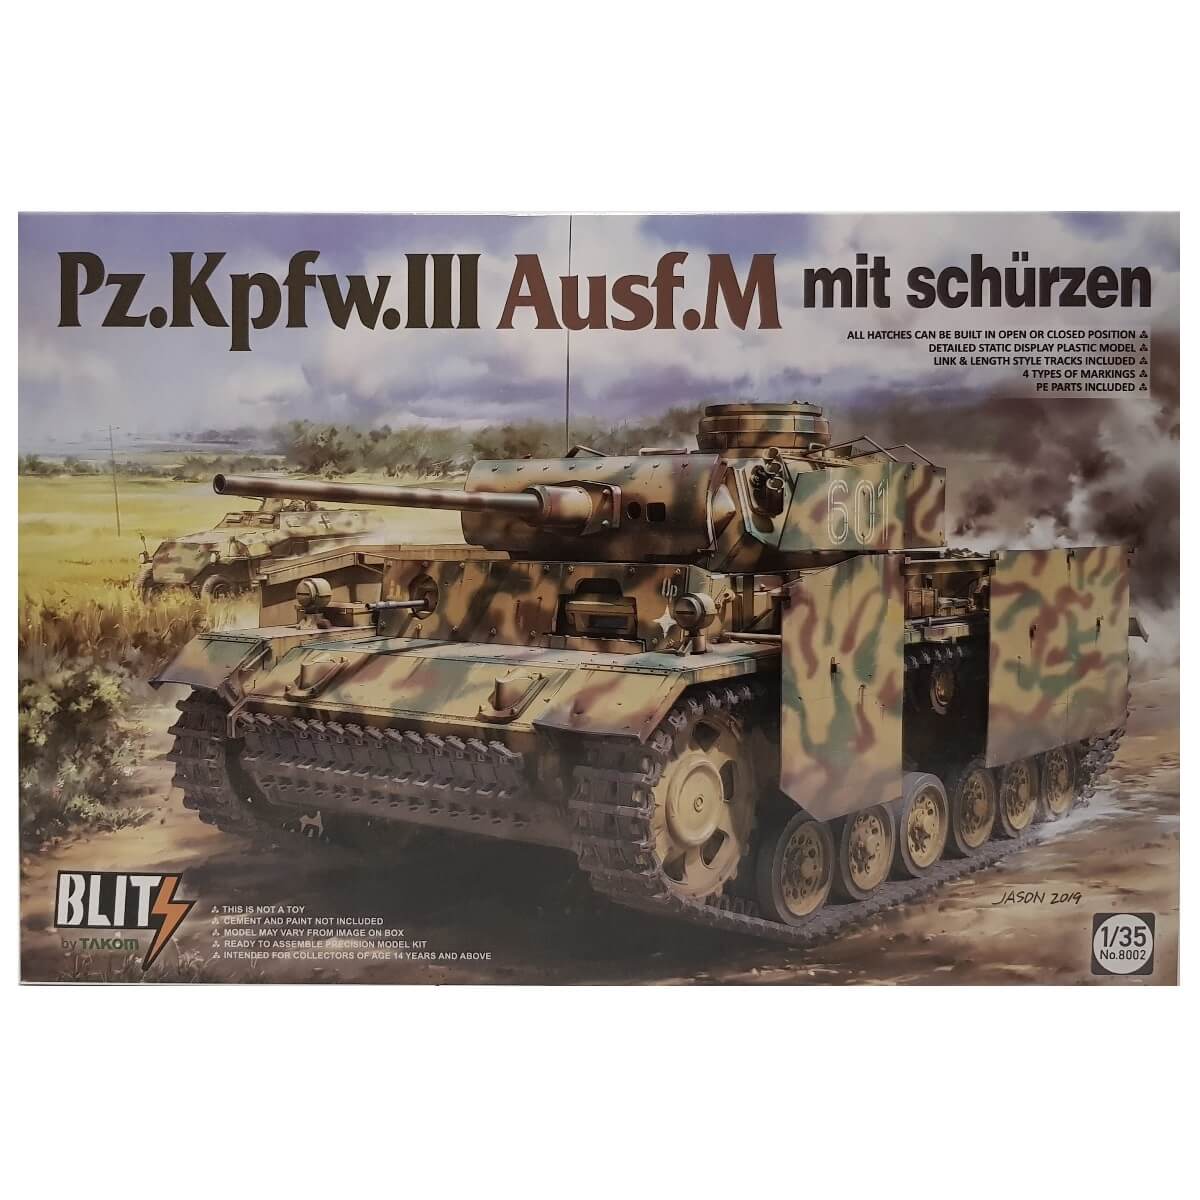 1:35 Pz.Kpfw. III Ausf. M mit schurzen - TAKOM